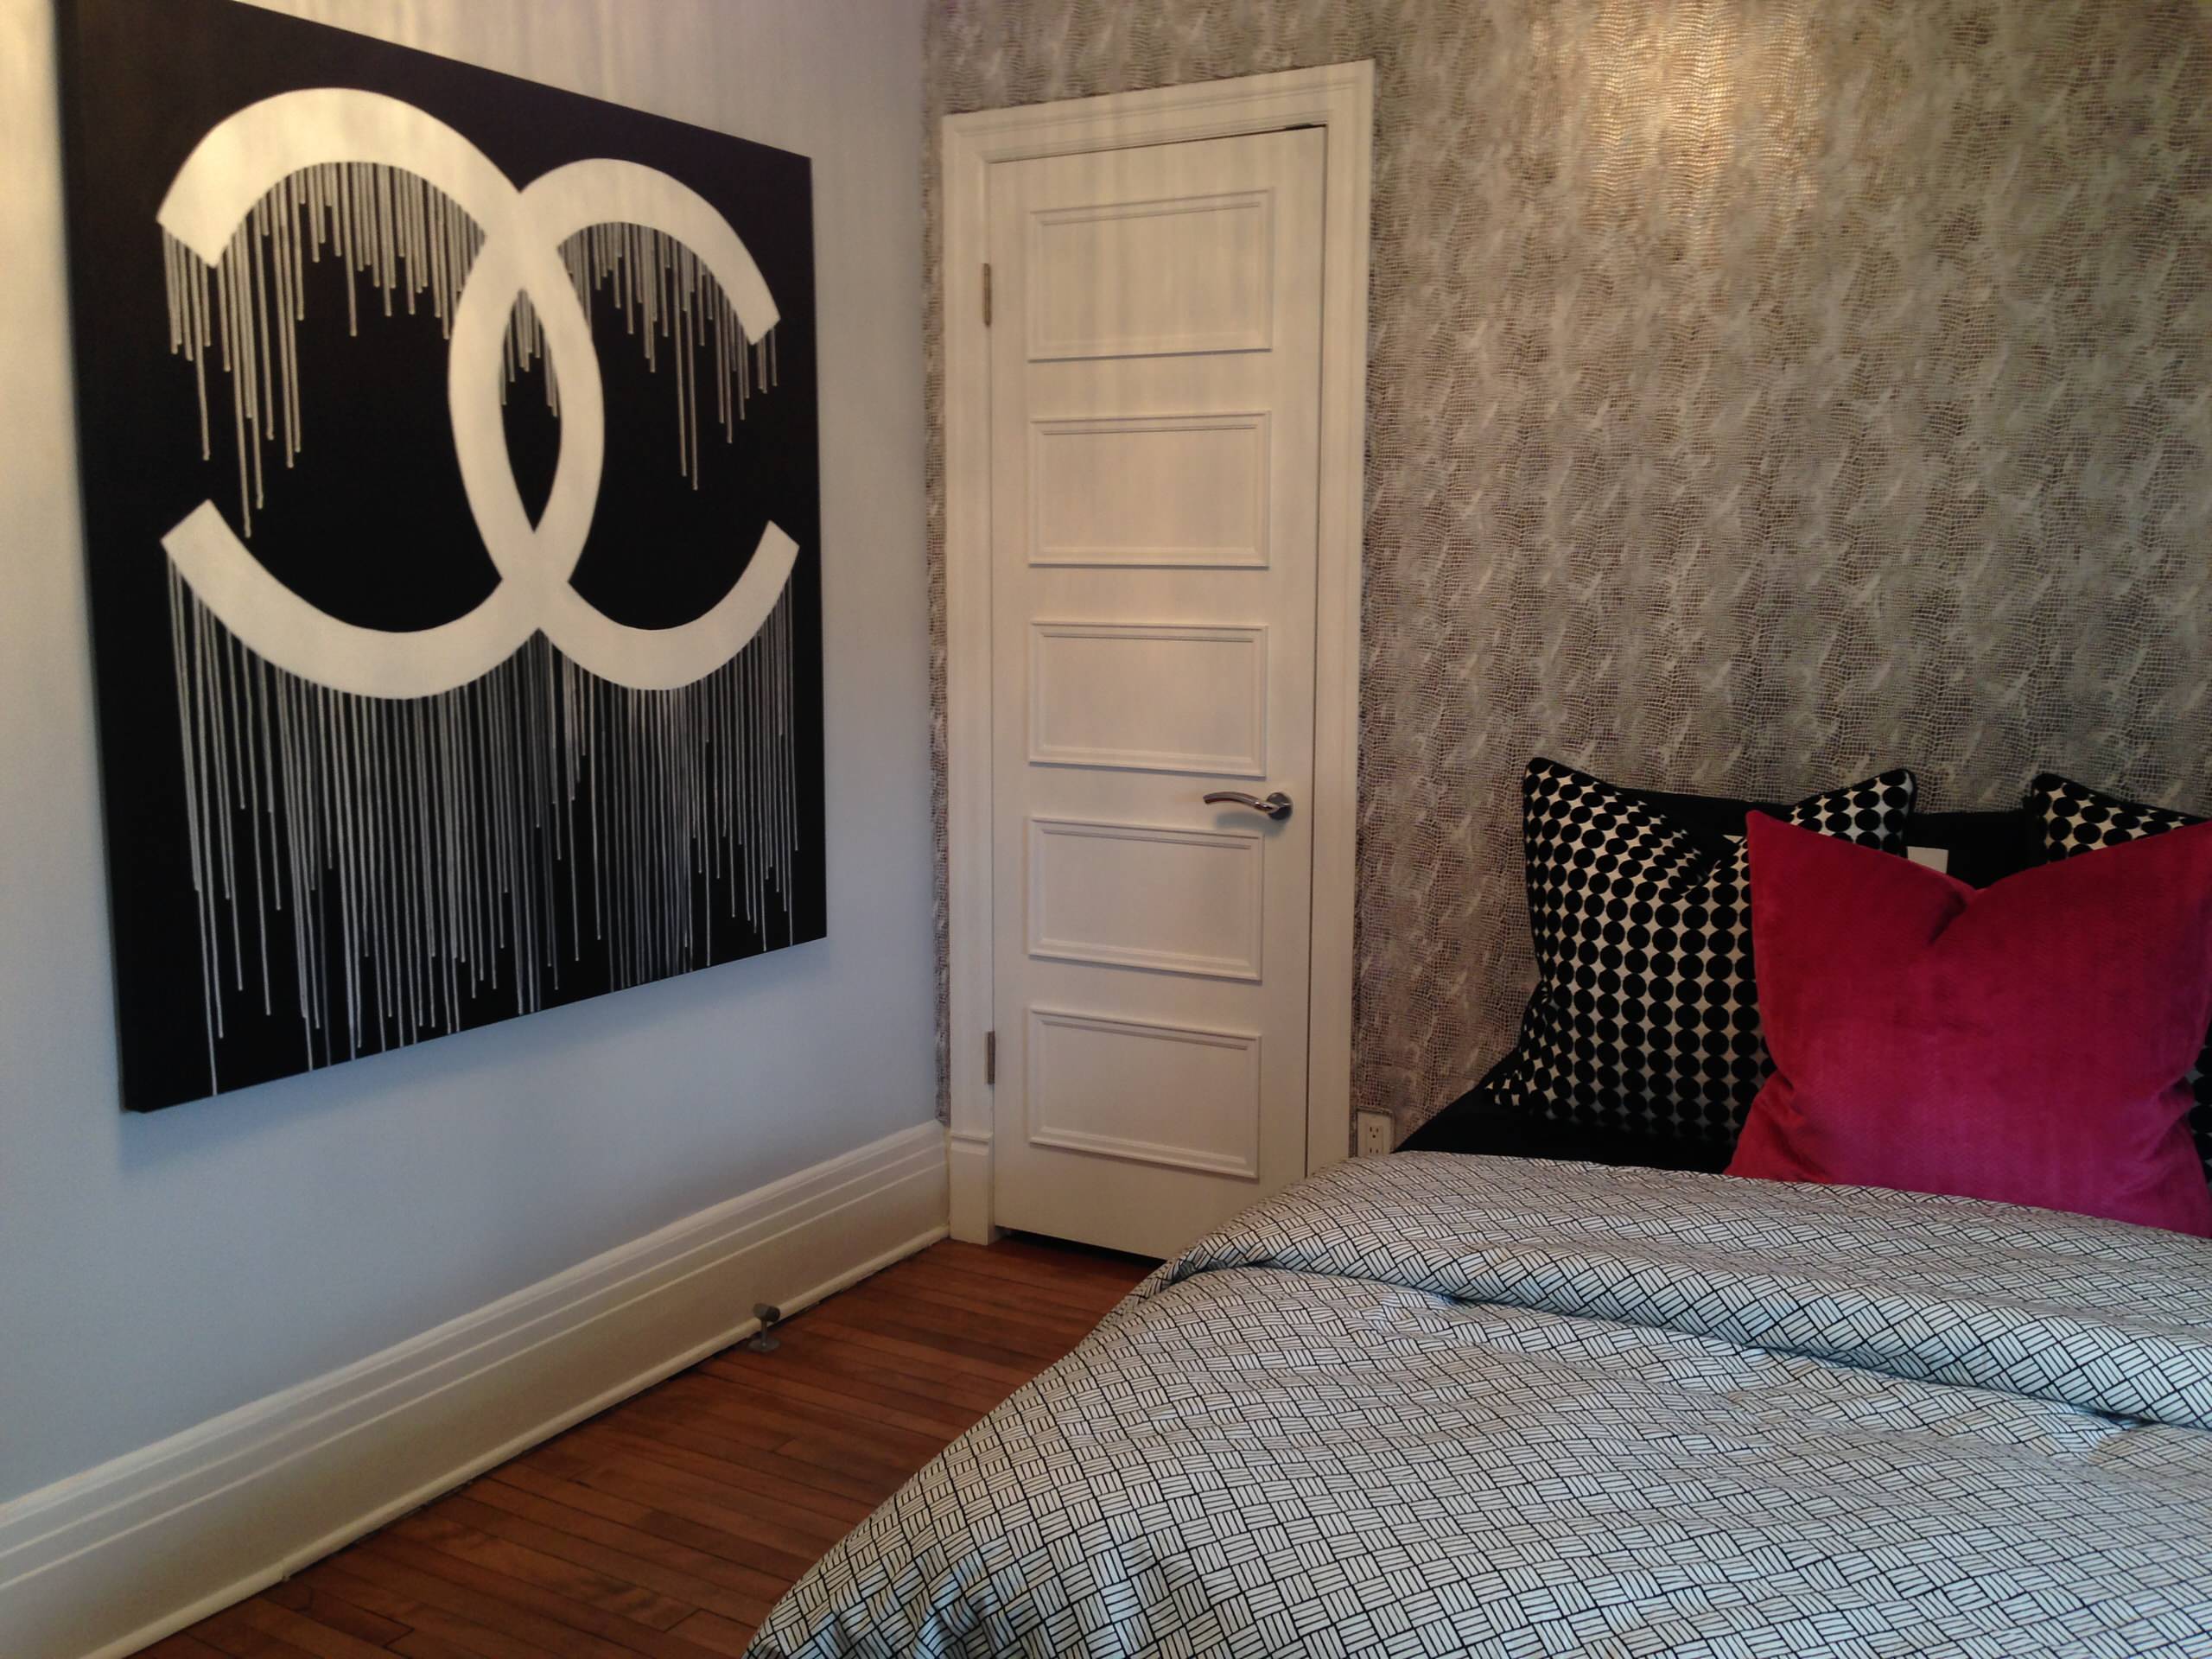 Chanel Bedroom - Photos & Ideas